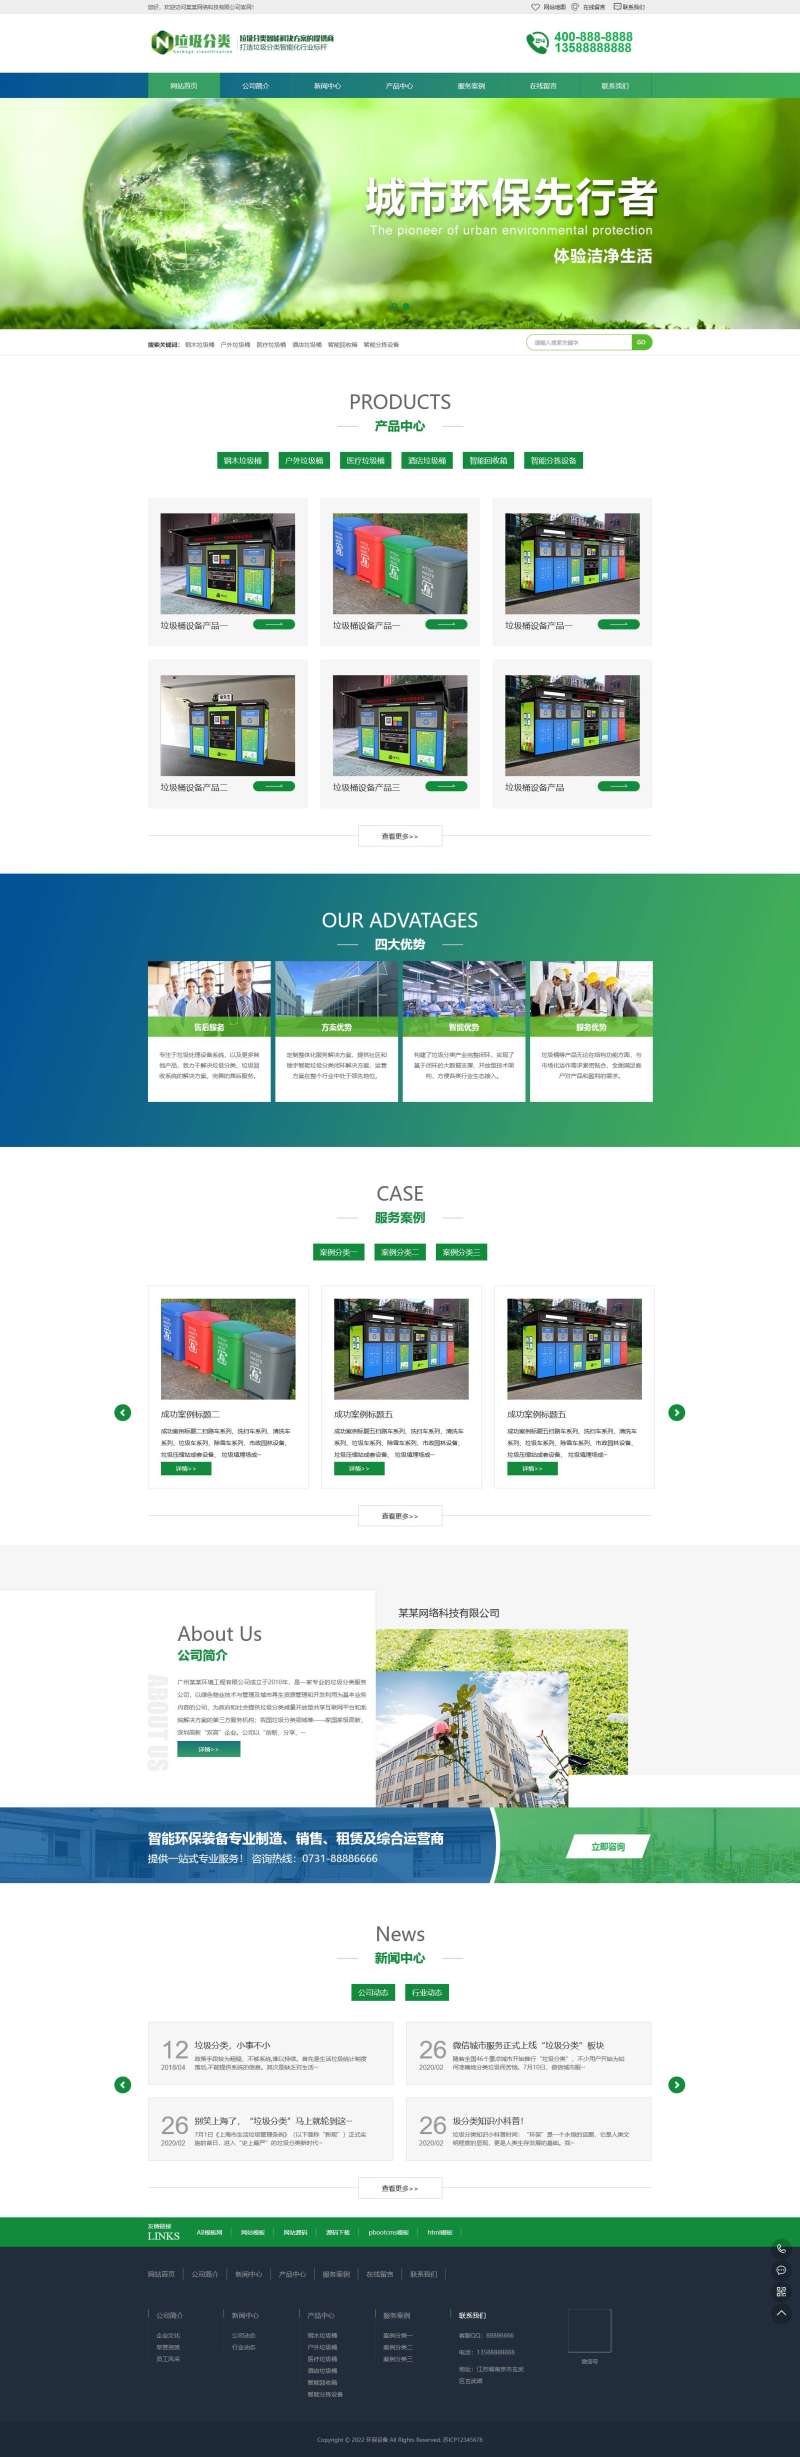 Pbootcms绿色环保设备企业网站整站源码